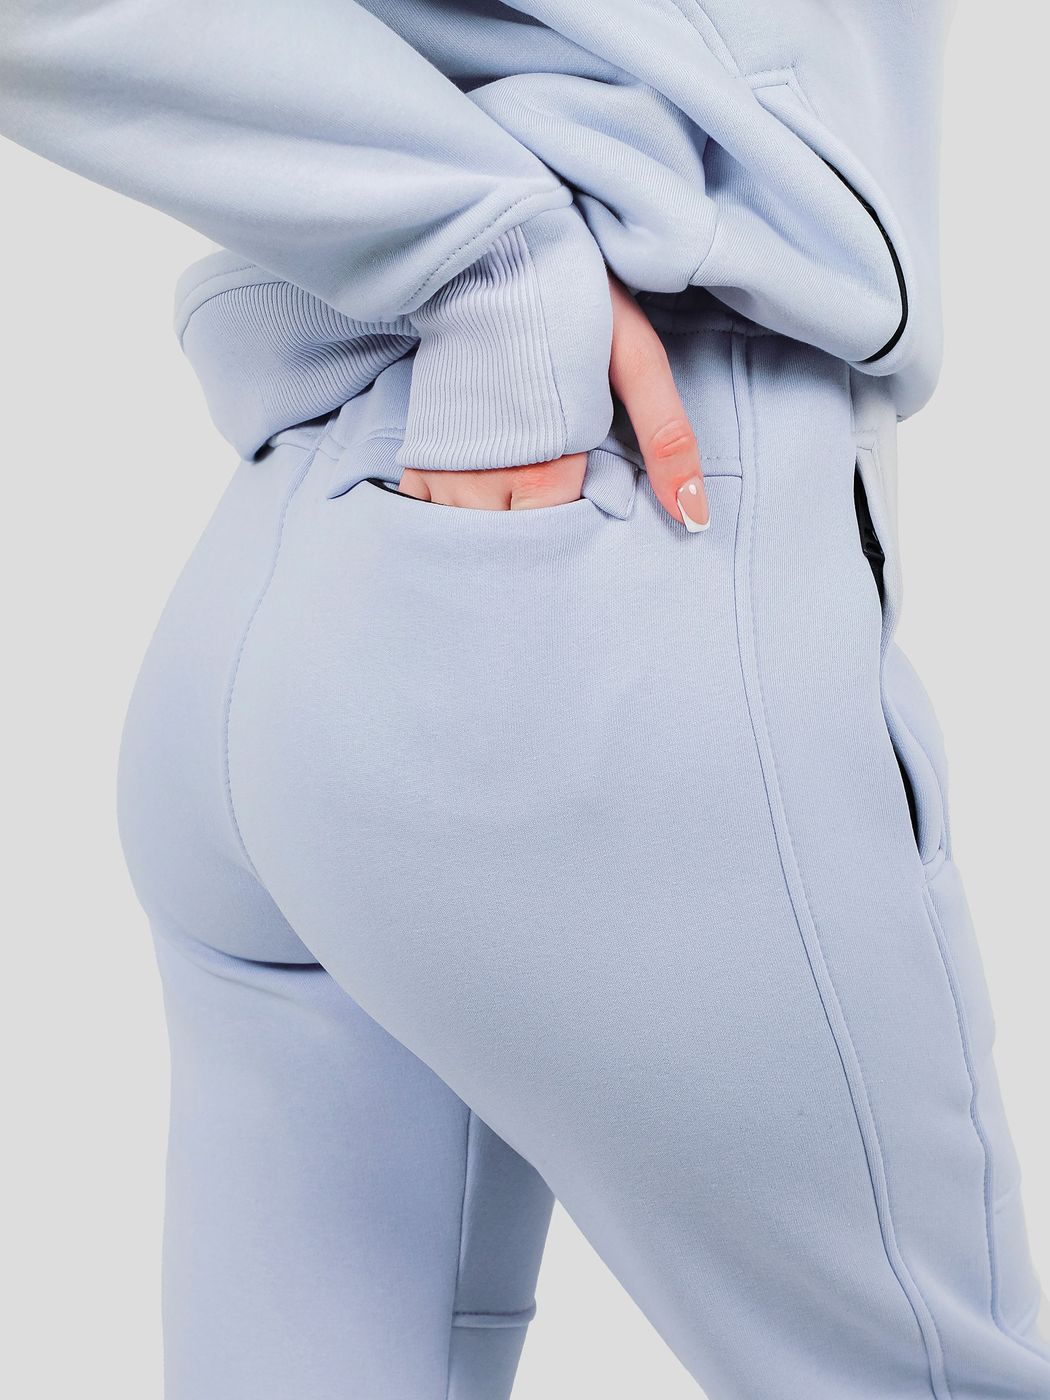 Костюм женский худи на молнии и штаны Светло-голубой, світло-блакитний, M-L, L (108 см)